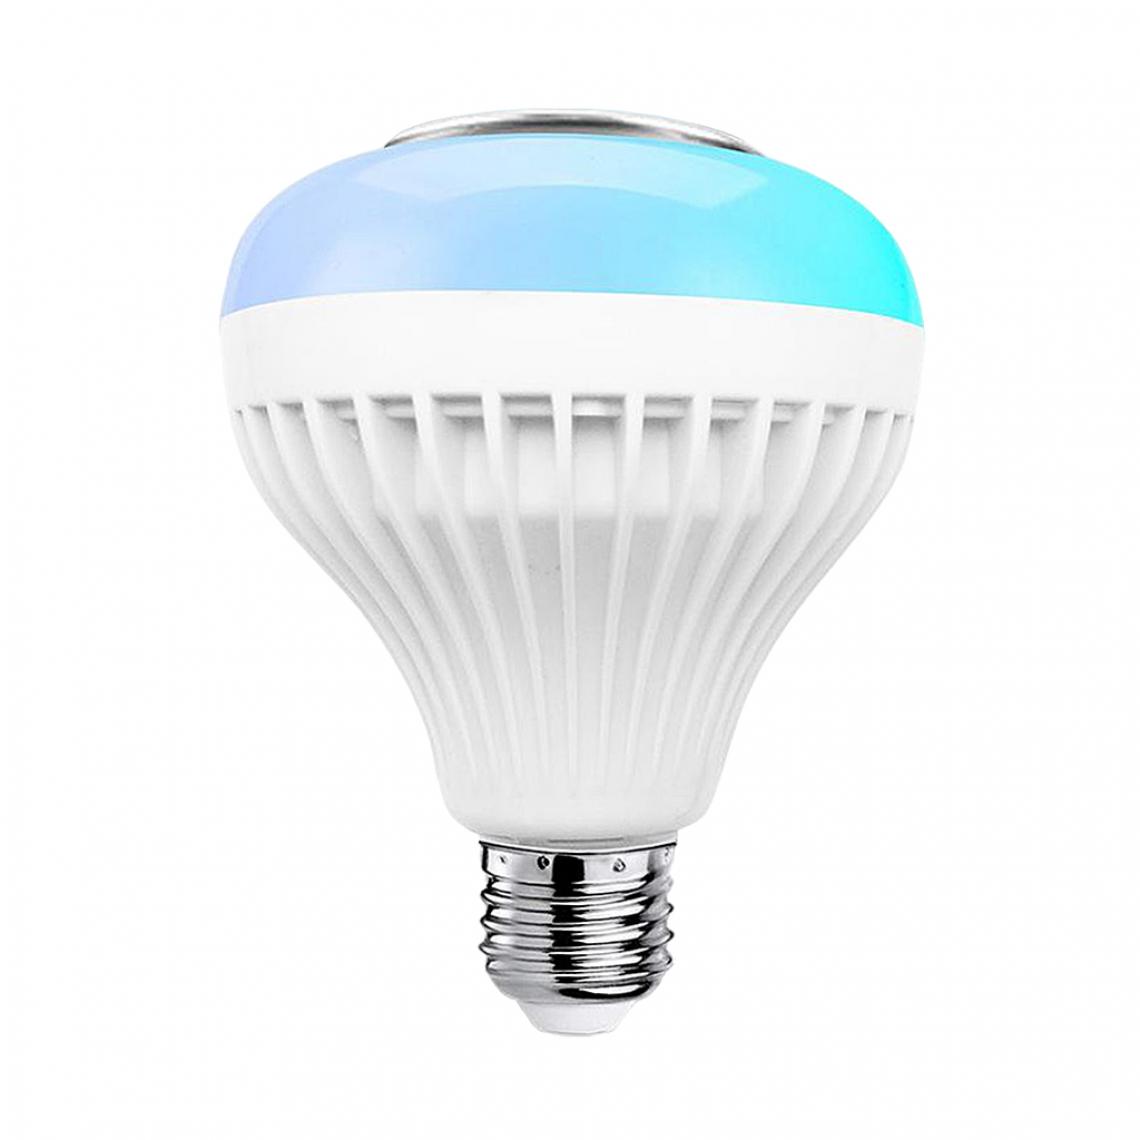 NC - Ampoule Bluetooth 12W E27 Lampe De Lecture De Musique Ampoule APPRGB + Blanc + Télécommande - Ampoules LED